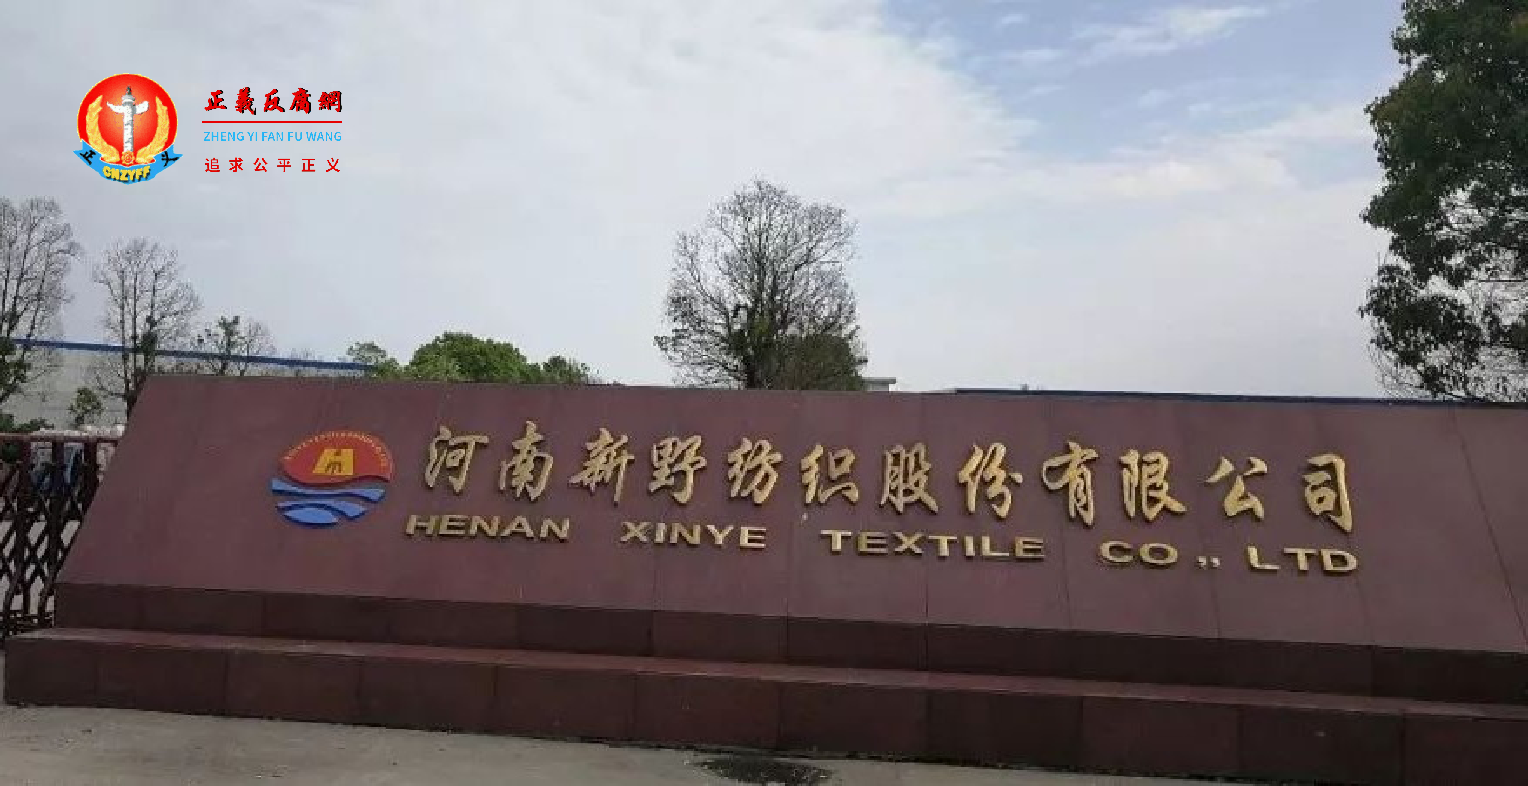 河南国企新野纺织股份有限公司入口处的大型石碑上镌刻着公司名称。.png